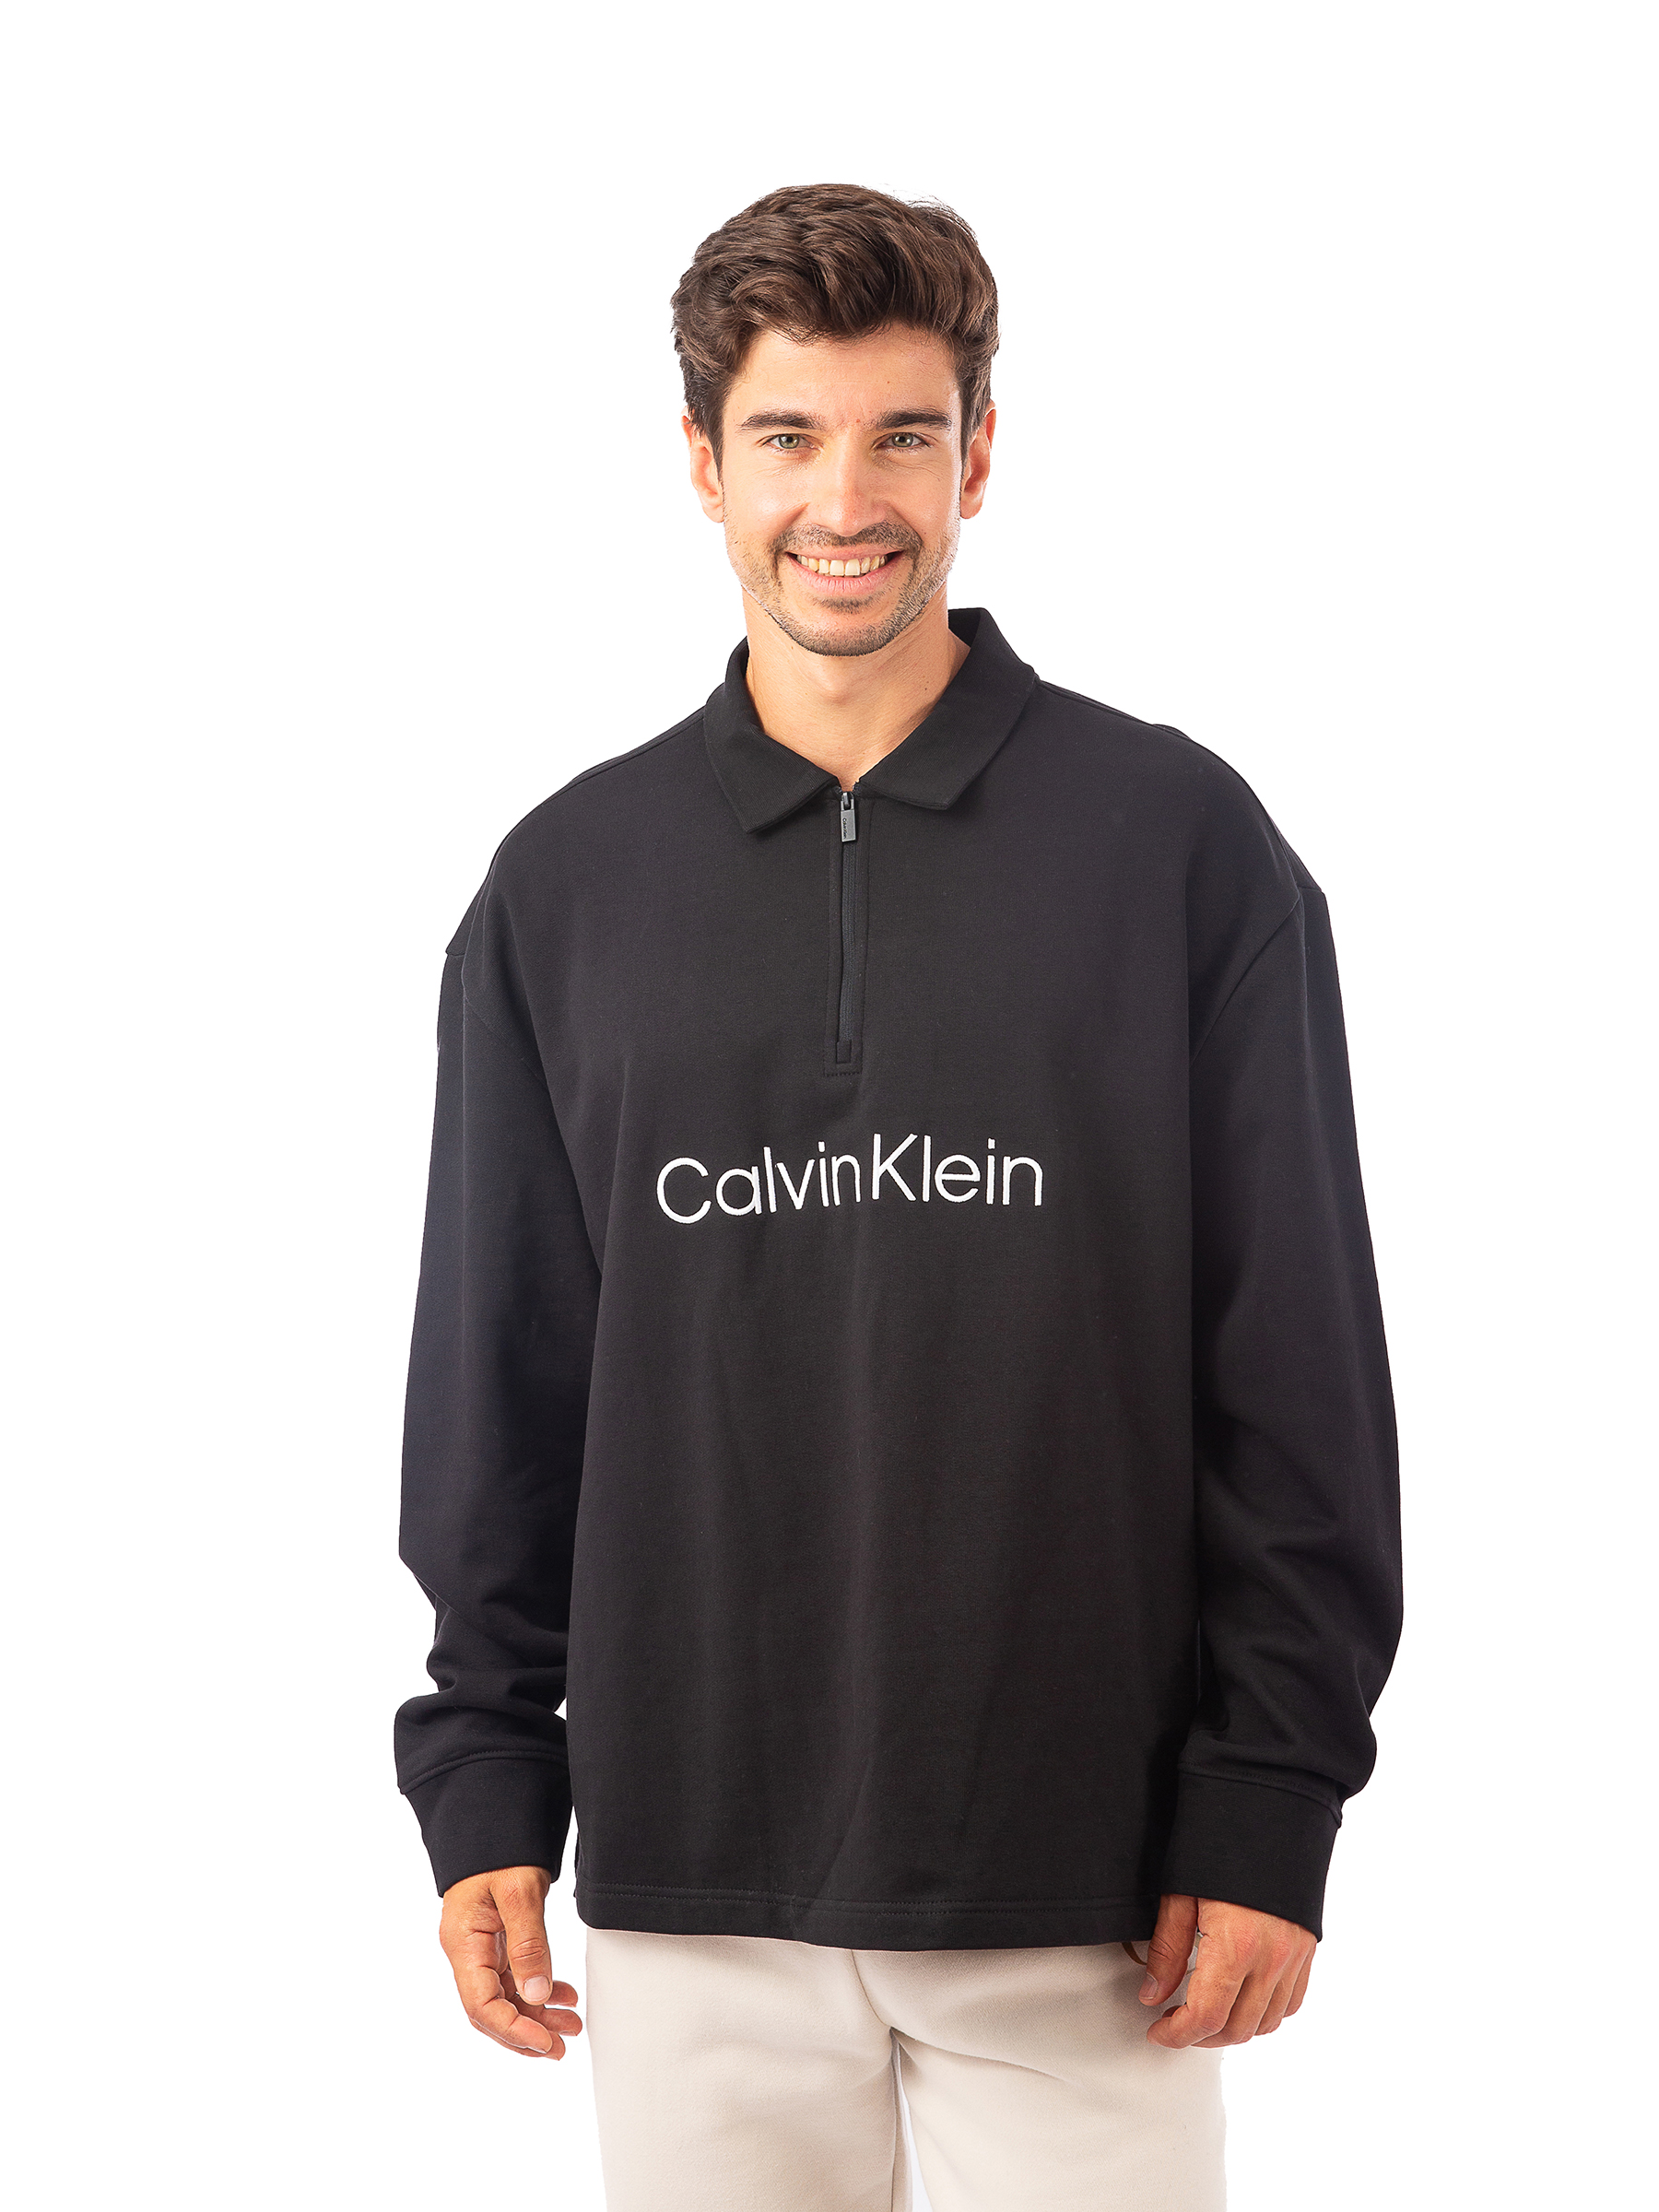 Свитшот мужской Calvin Klein 40HM250 черный S